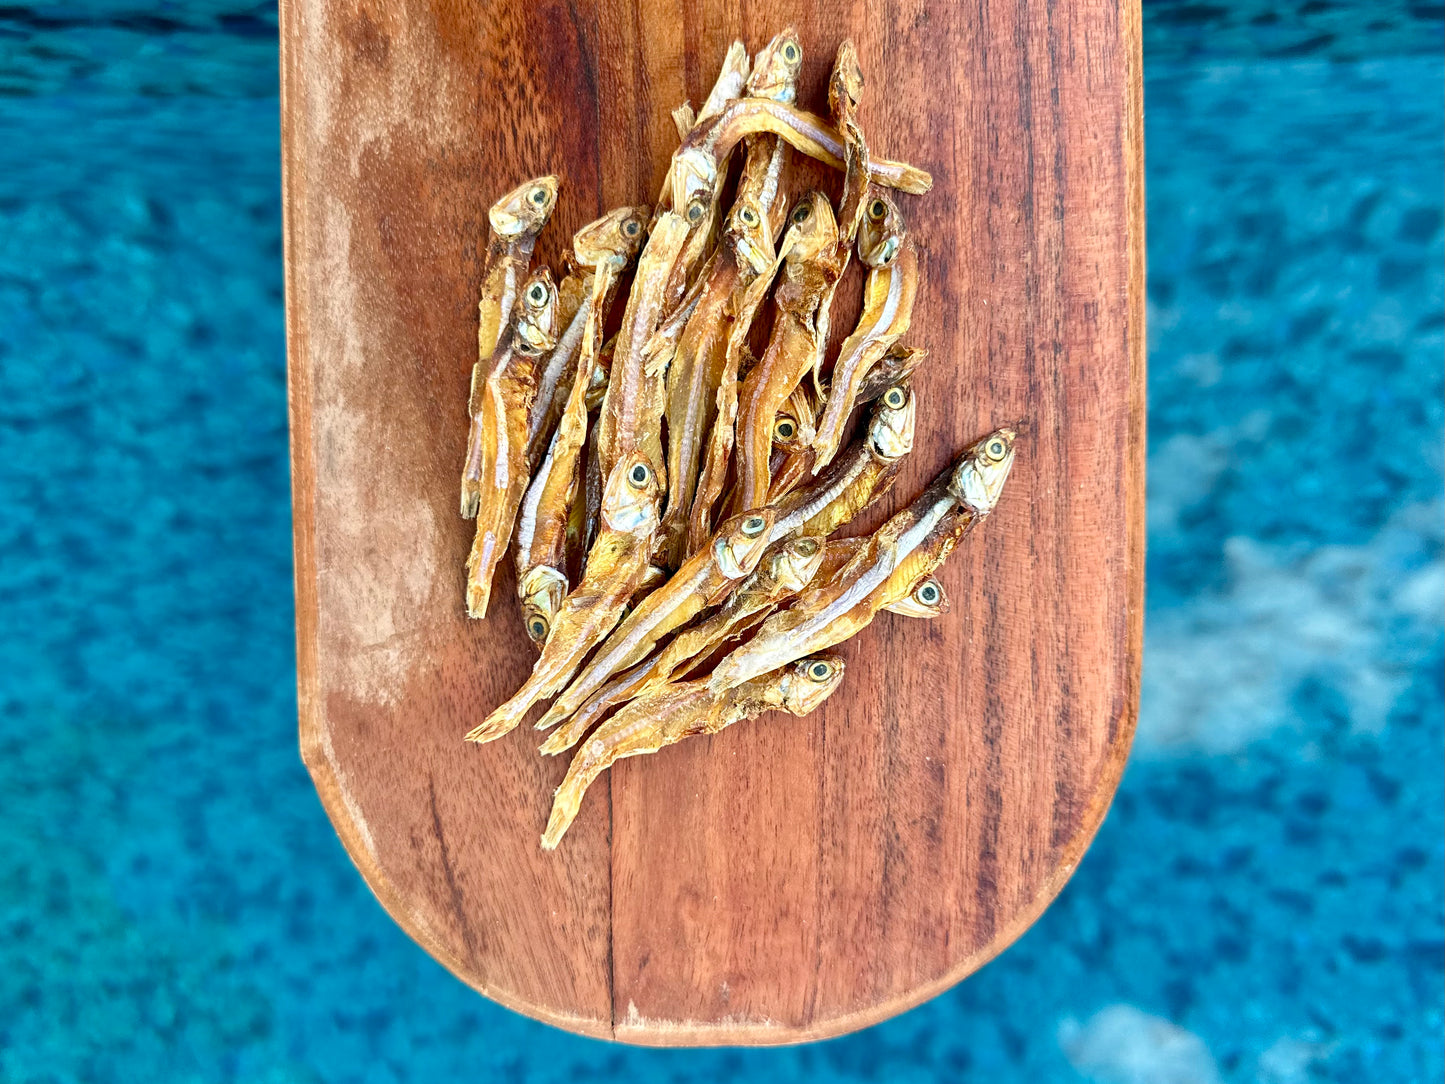 Sun Dried Sardines